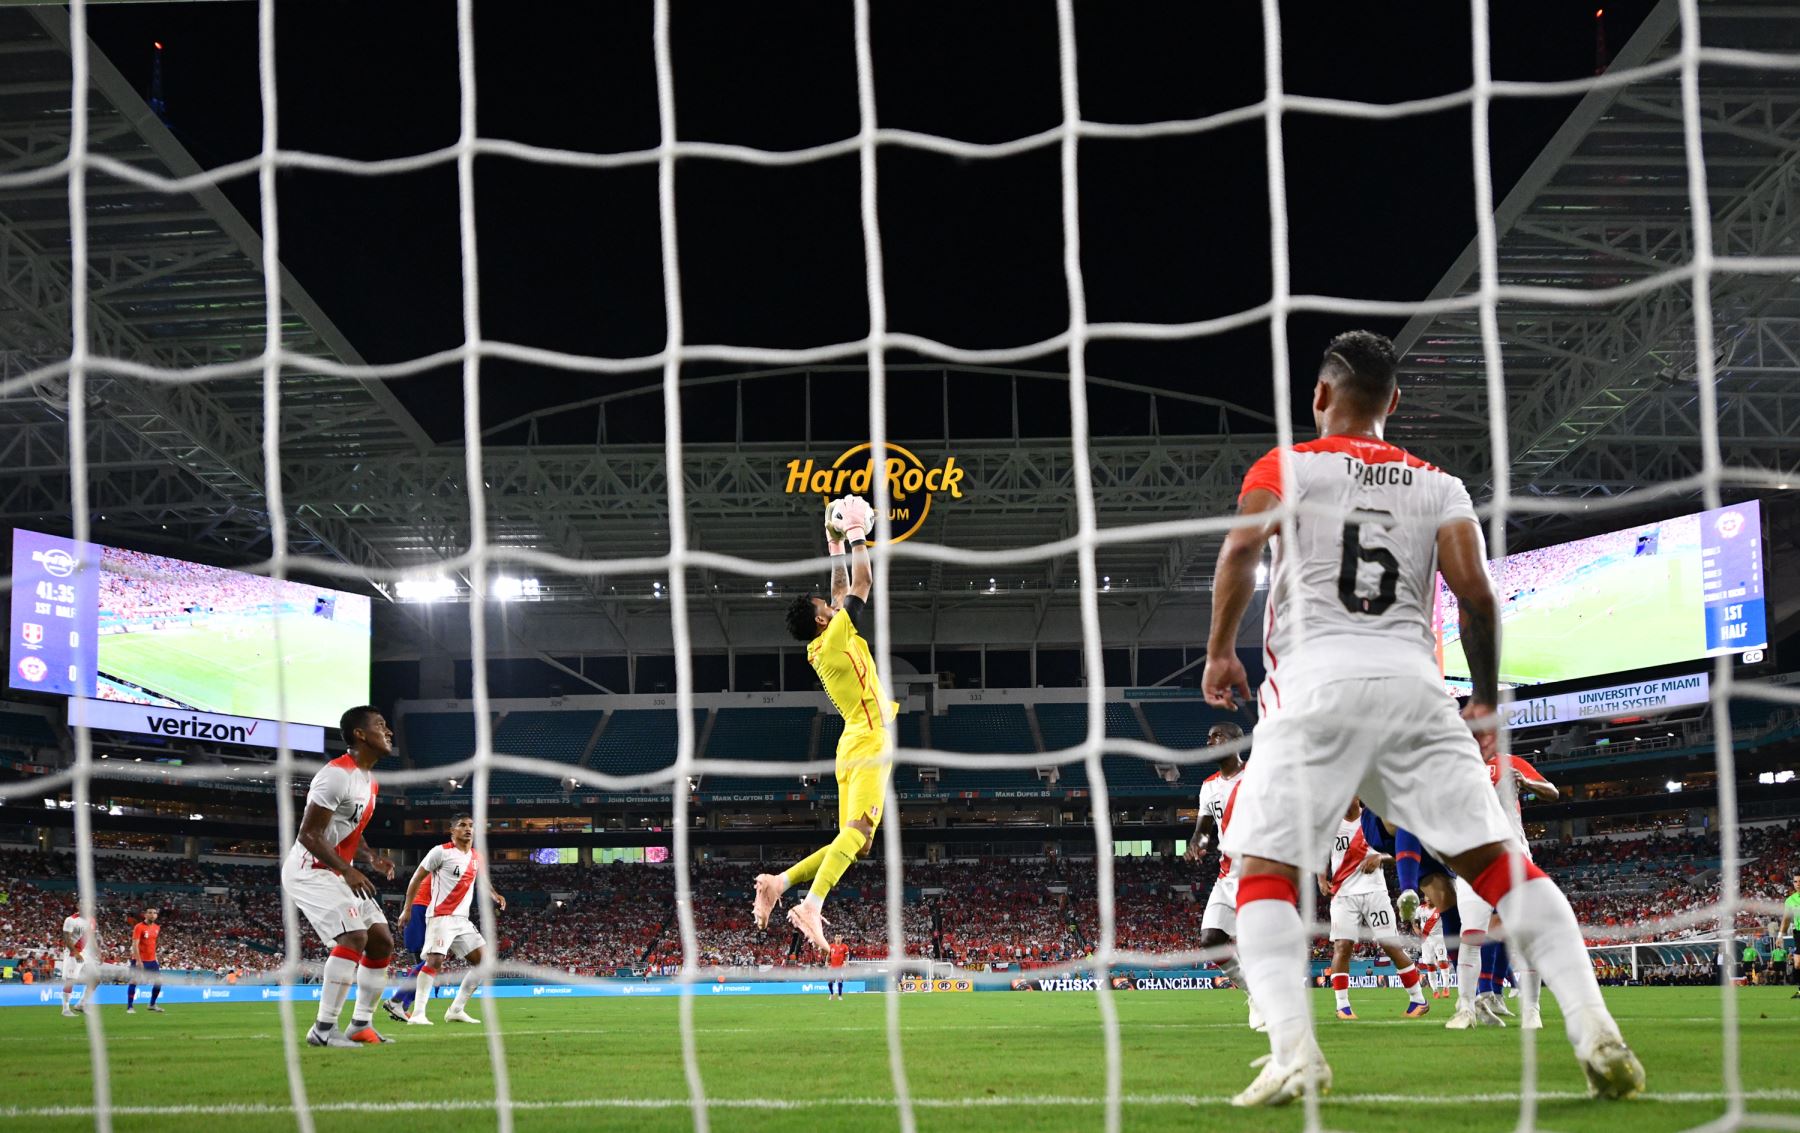 La selección de Perú venció por 3-0 a Chile en partido amistoso disputado en el Hard Rock Stadium de Miami, en Estados Unidos.Foto:ANDINA/AFP